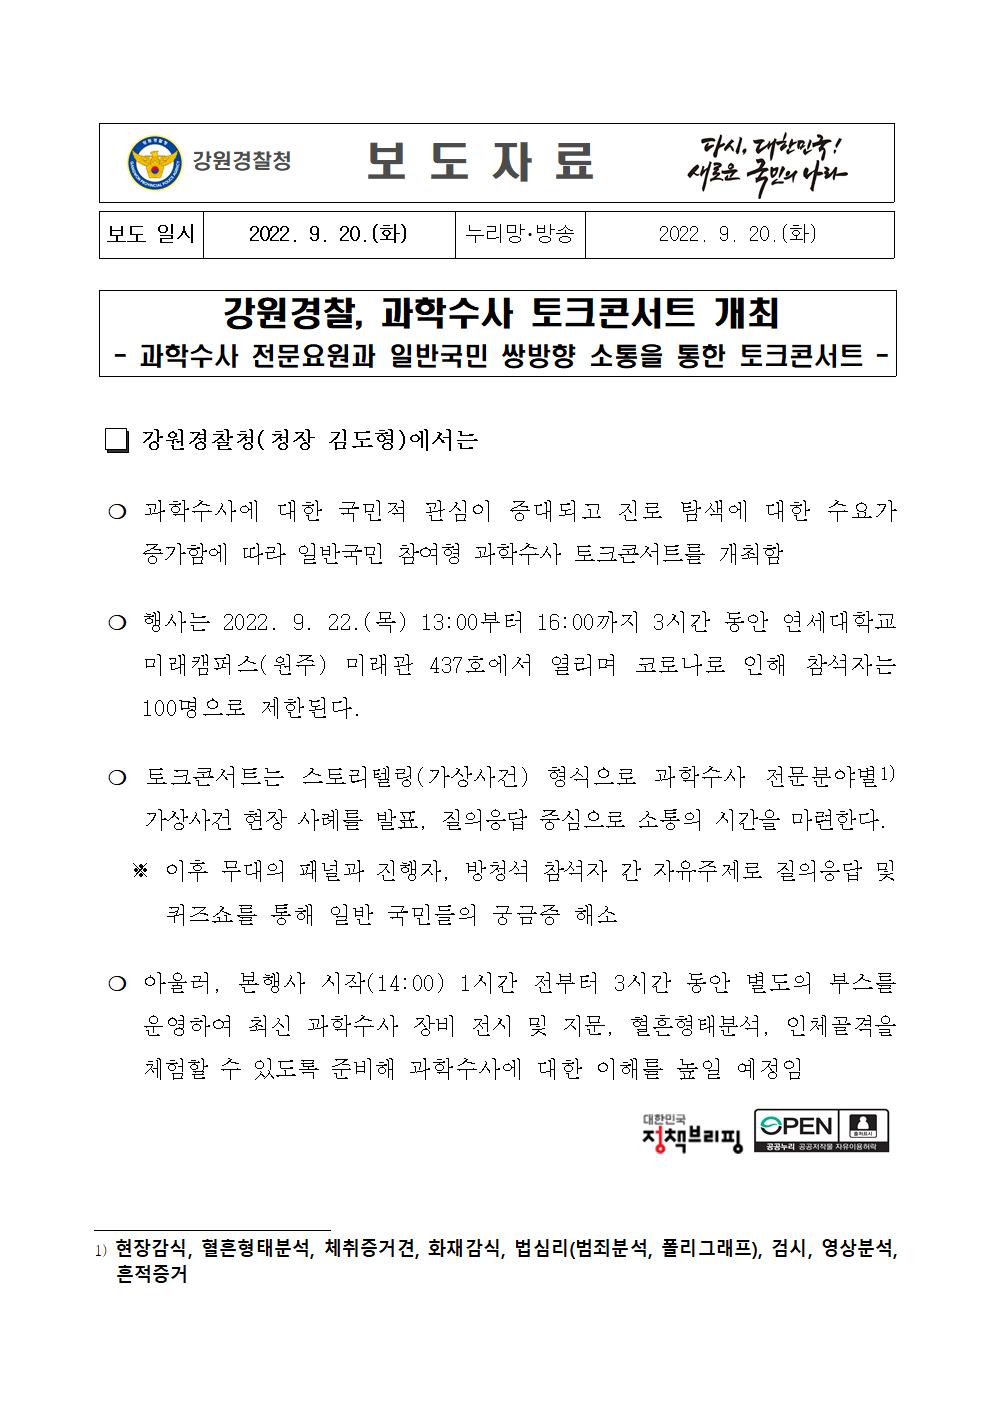 강원경찰, 과학수사 토크콘서트 개최 -강원경찰, 과학수사 토크콘서트 개최001